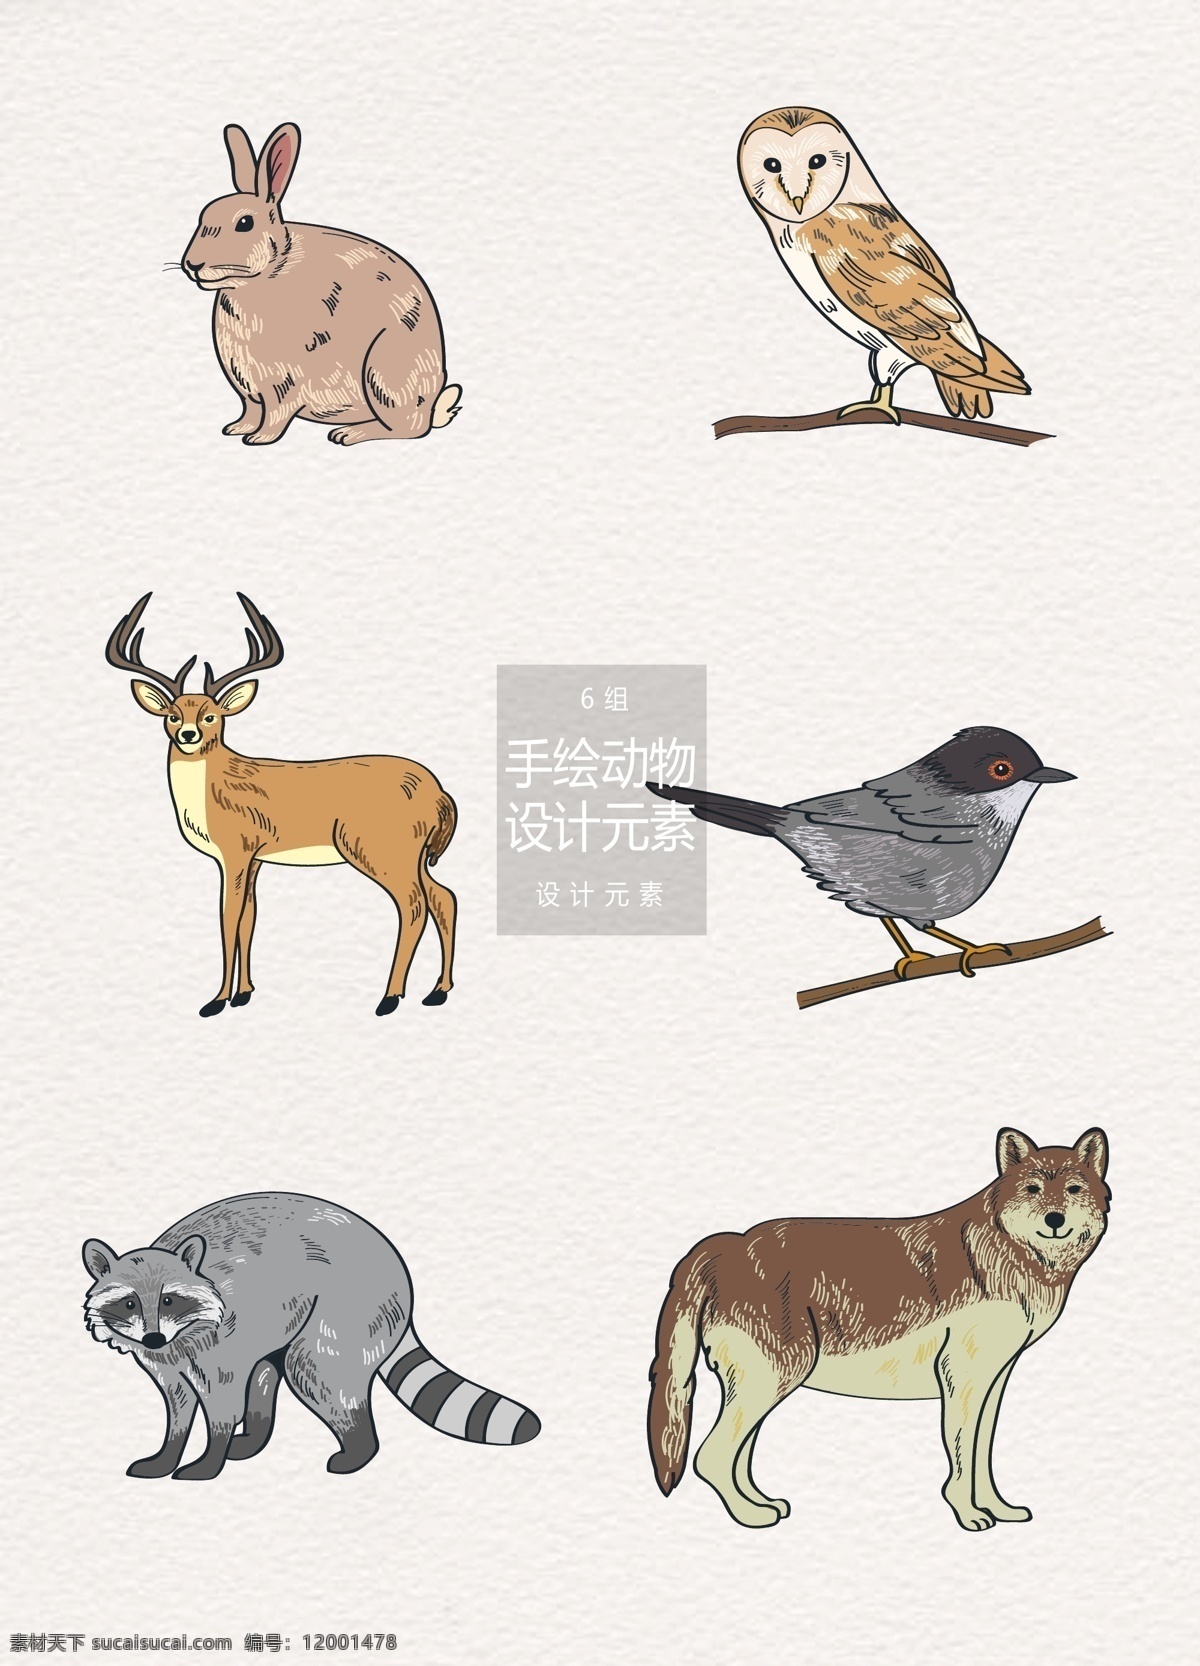 手绘 动物 插画 元素 设计元素 兔子 森林 小鸟 手绘动物 动物插画 猫头鹰 狼 驯鹿 麋鹿